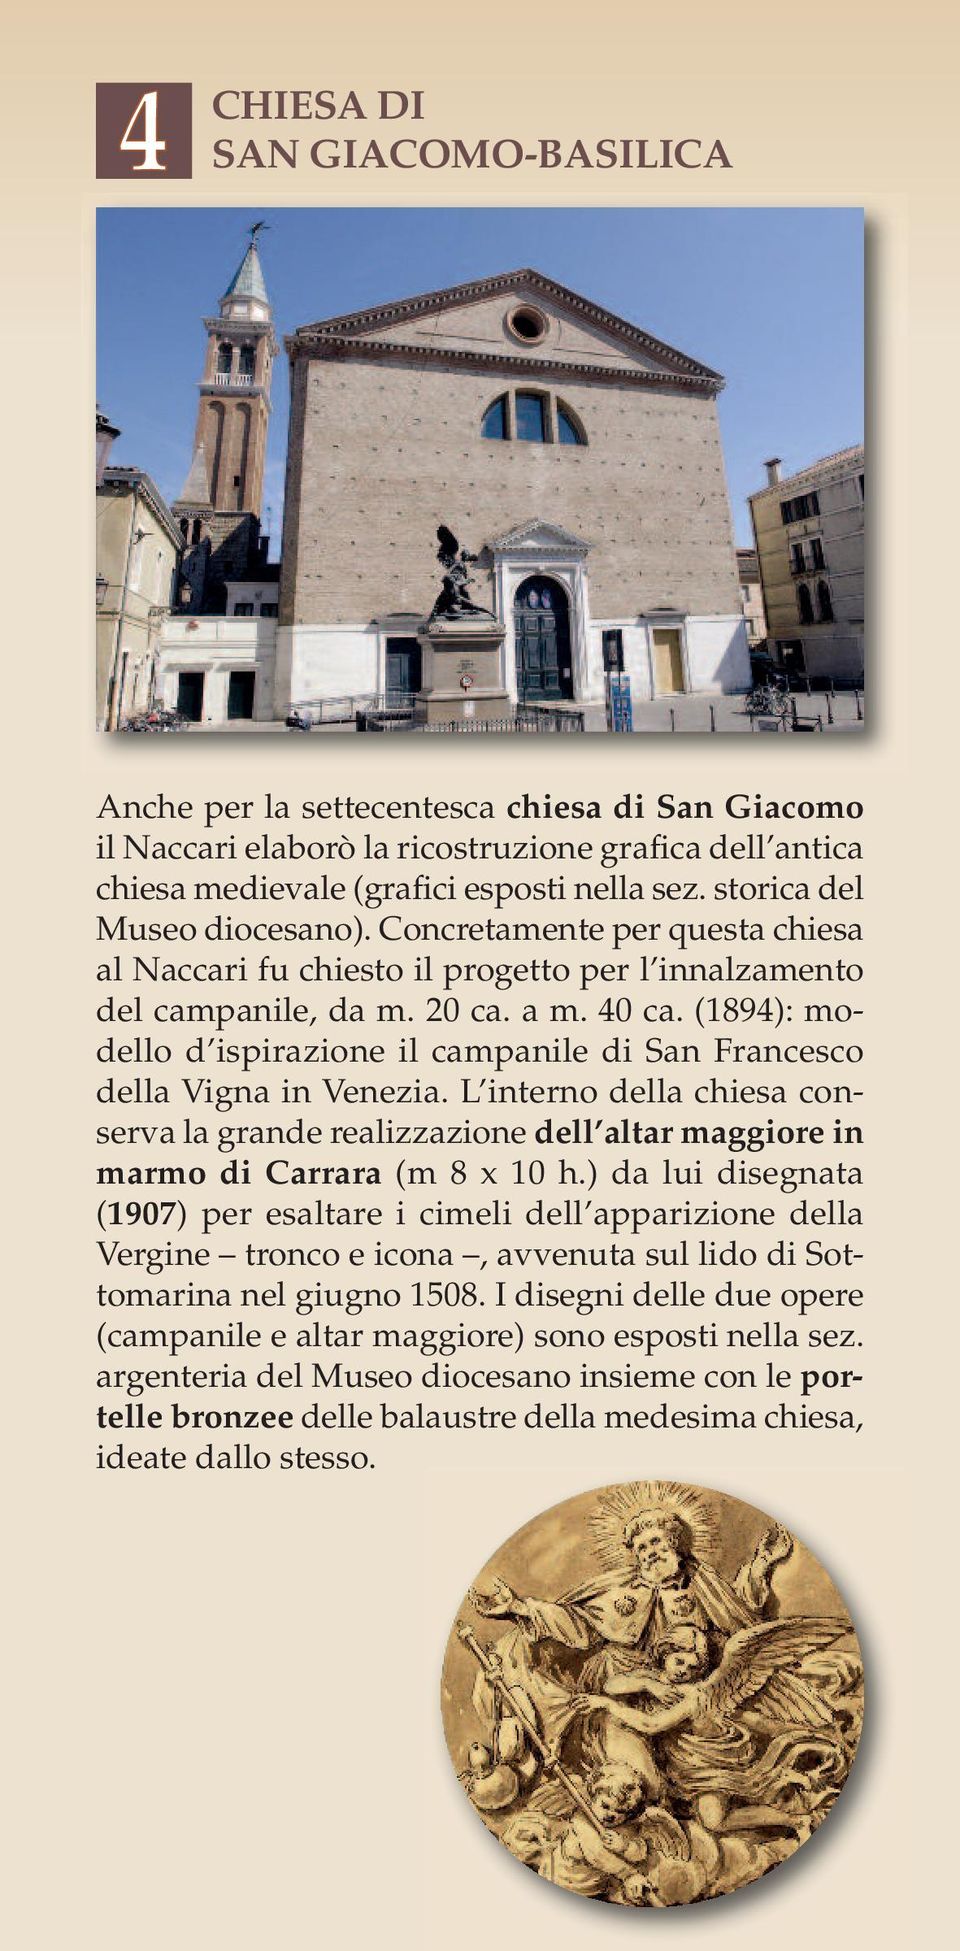 (1894): modello d ispirazione il campanile di San Francesco della Vigna in Venezia. L interno della chiesa conserva la grande realizzazione dell altar maggiore in marmo di Carrara (m 8 x 10 h.